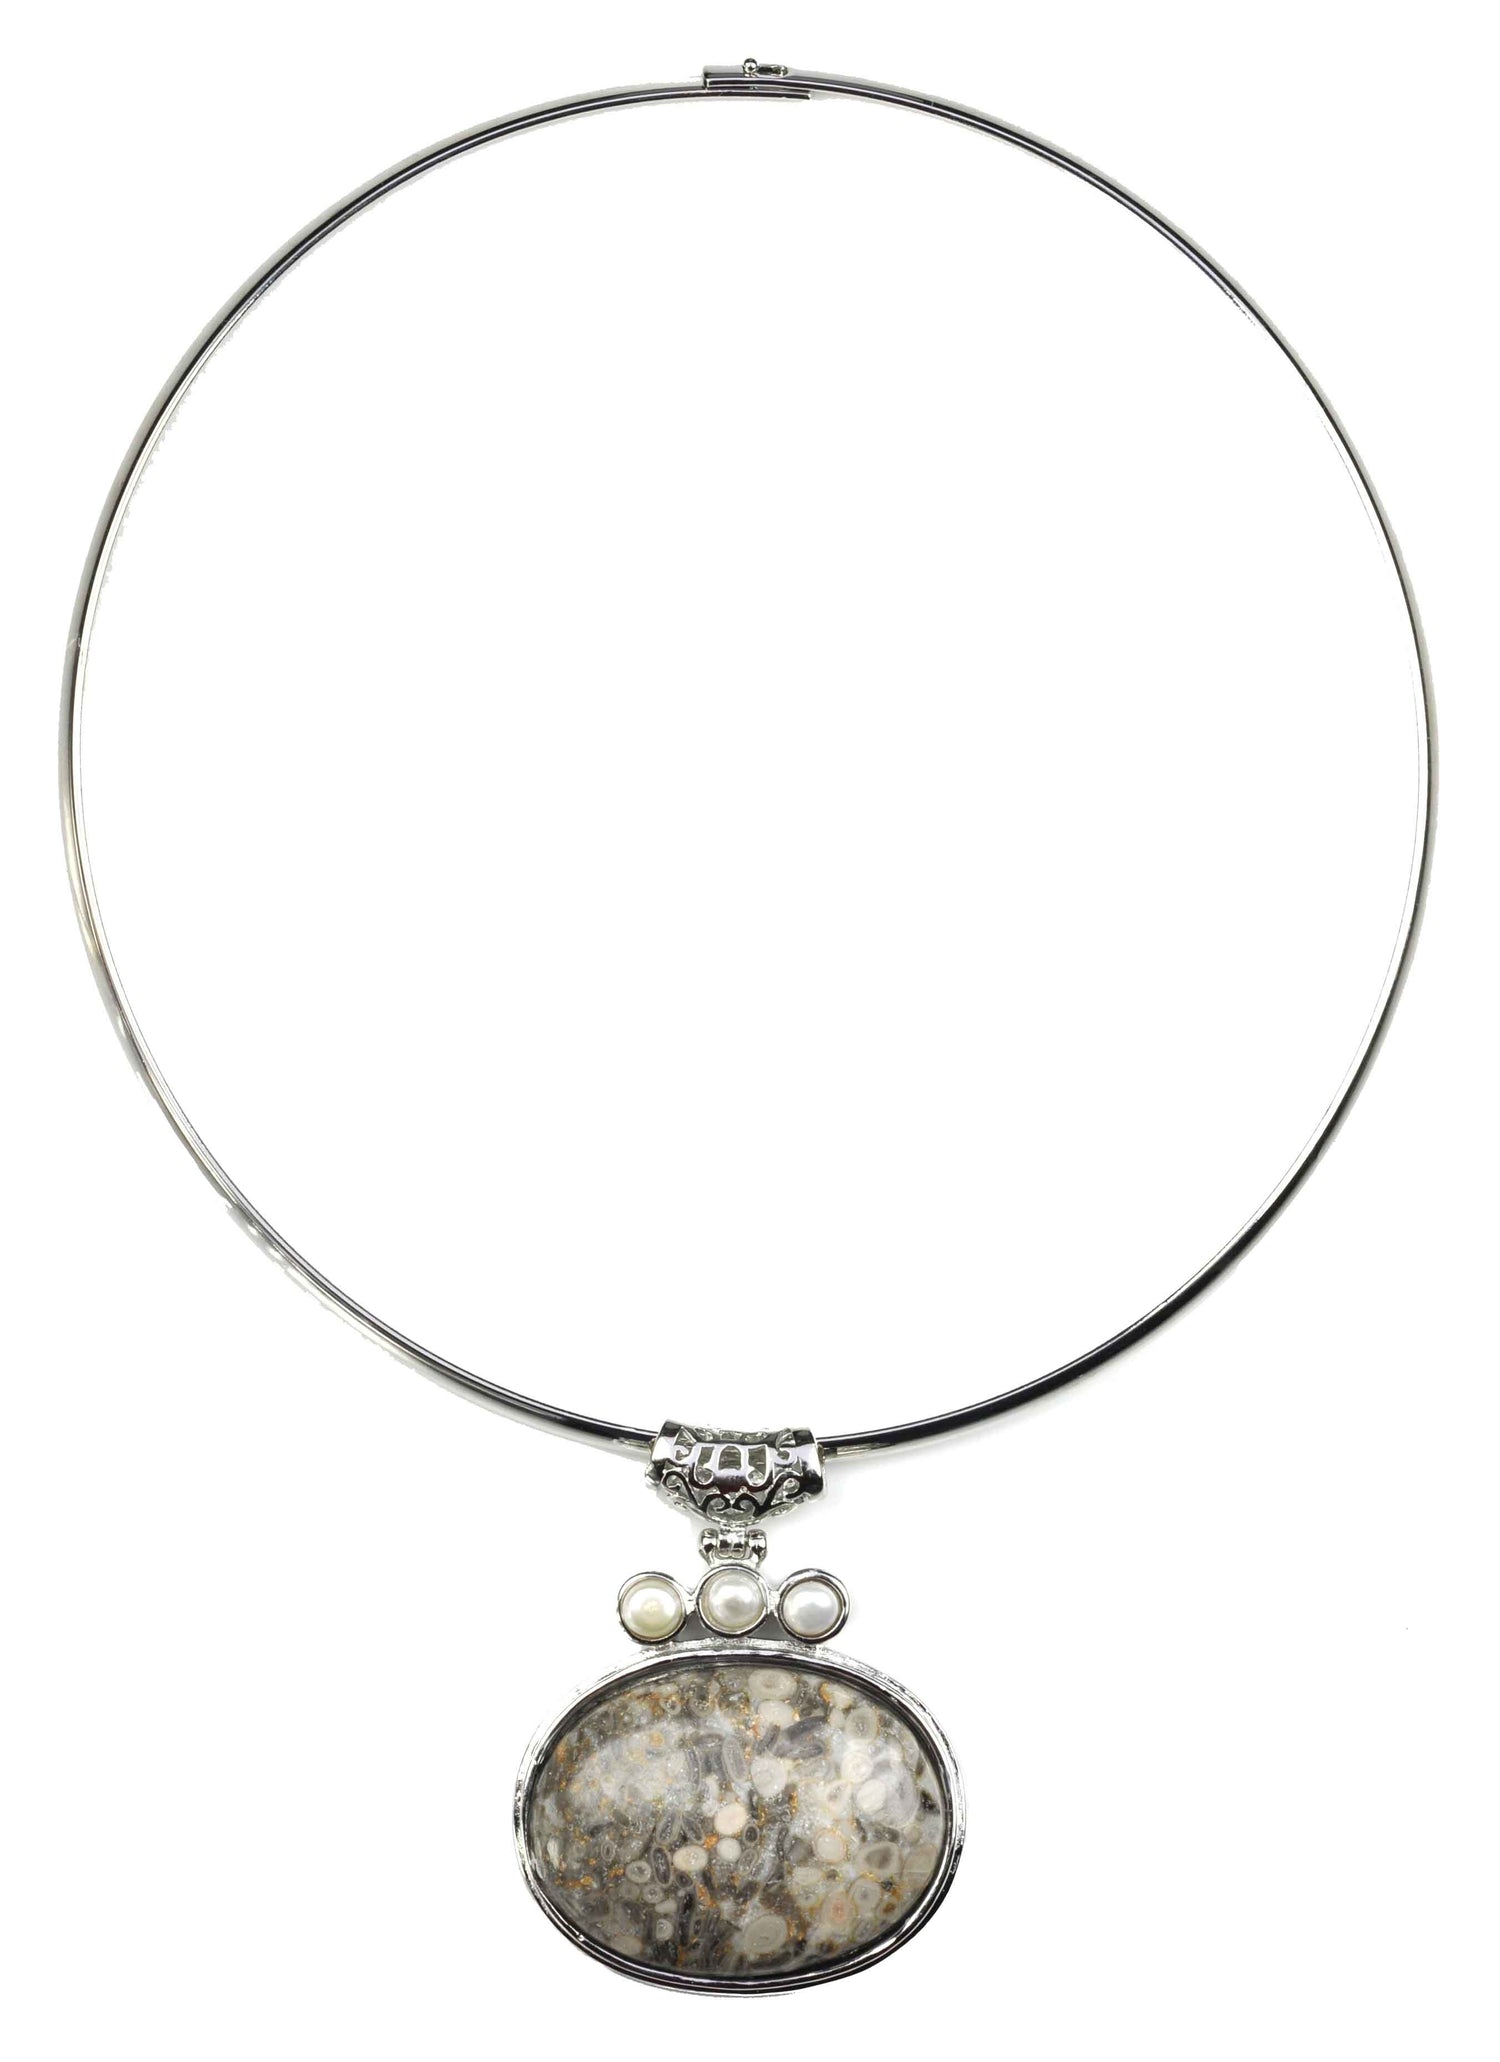 Zoetwater parelketting met grijze edelstenen hanger | Three Pearl Grey Gemstone